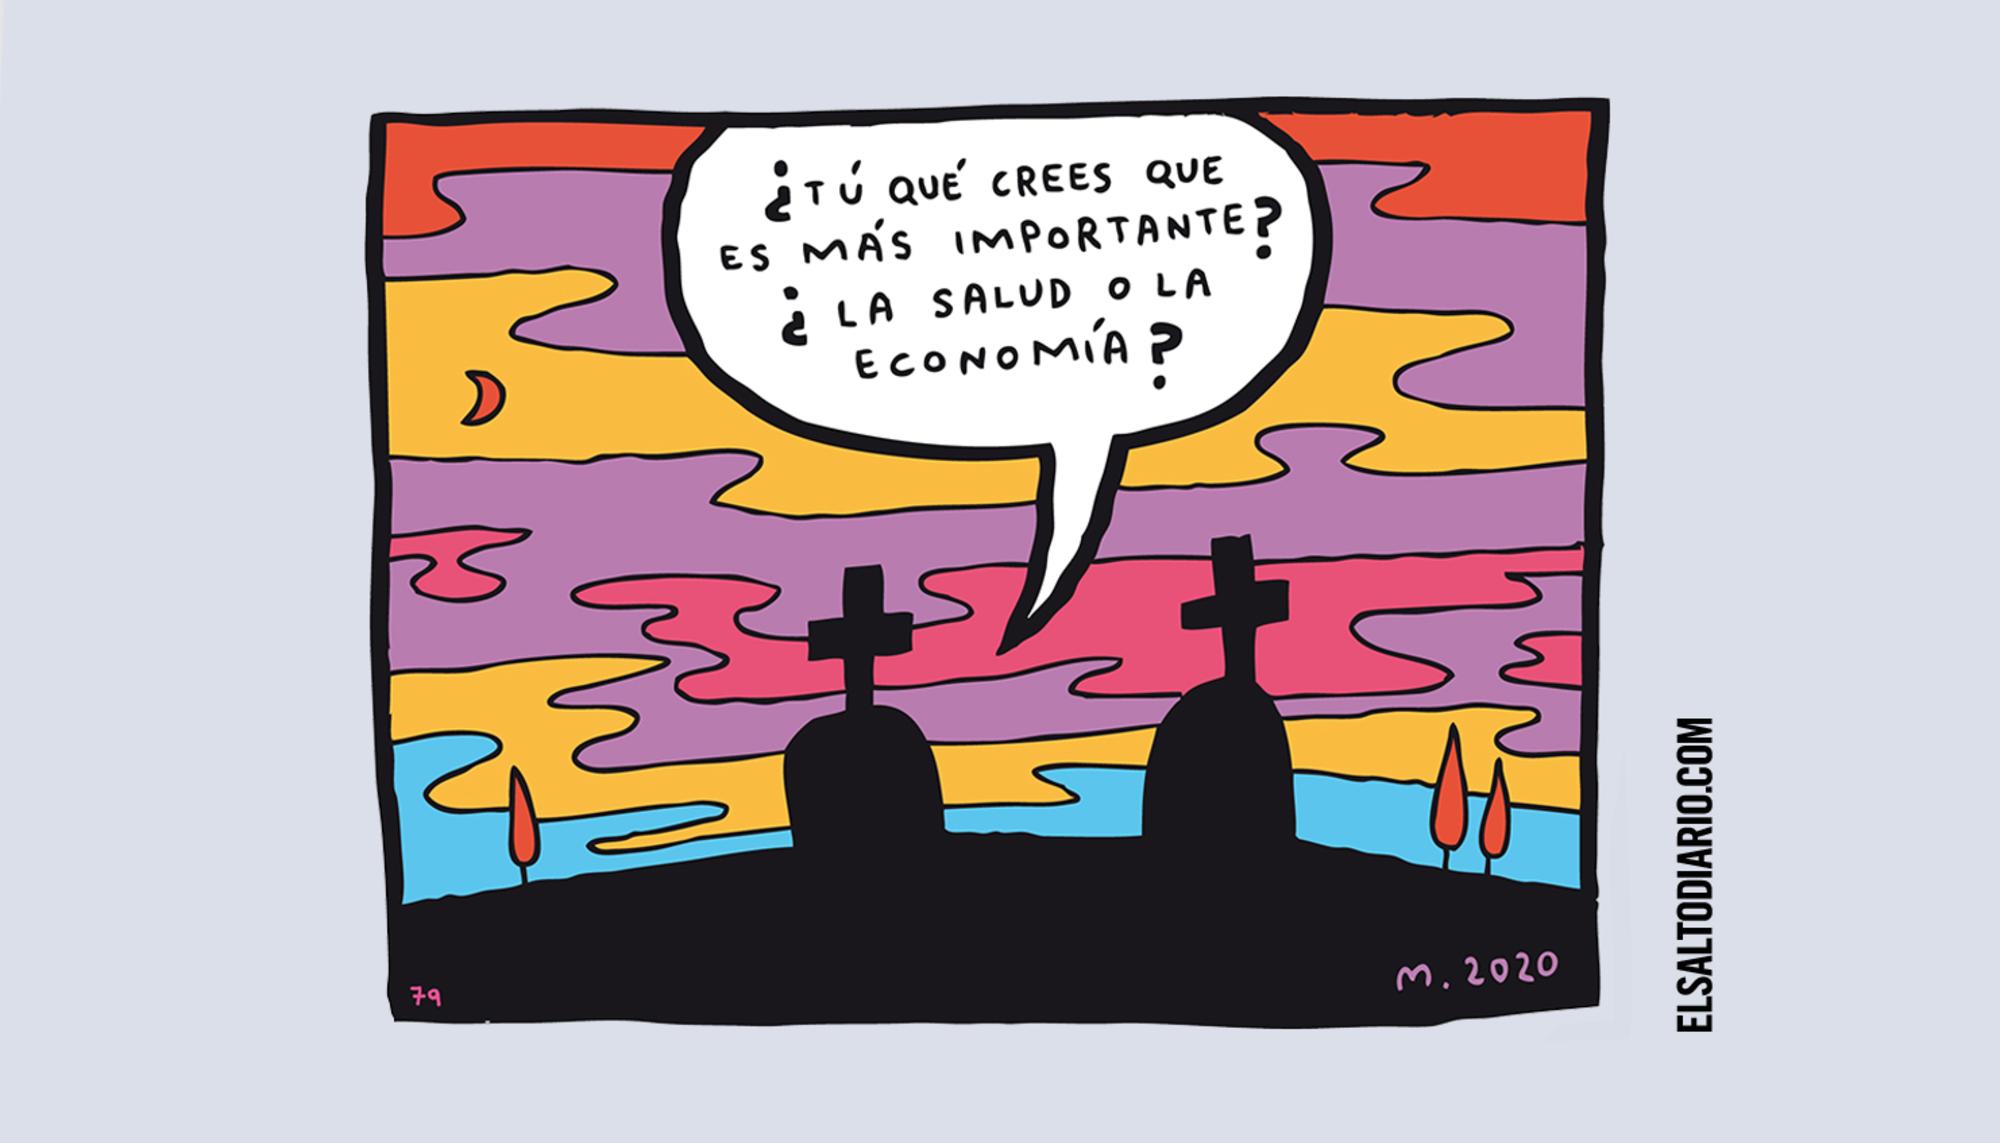 La salud o la economía, por Mauro Entrialgo